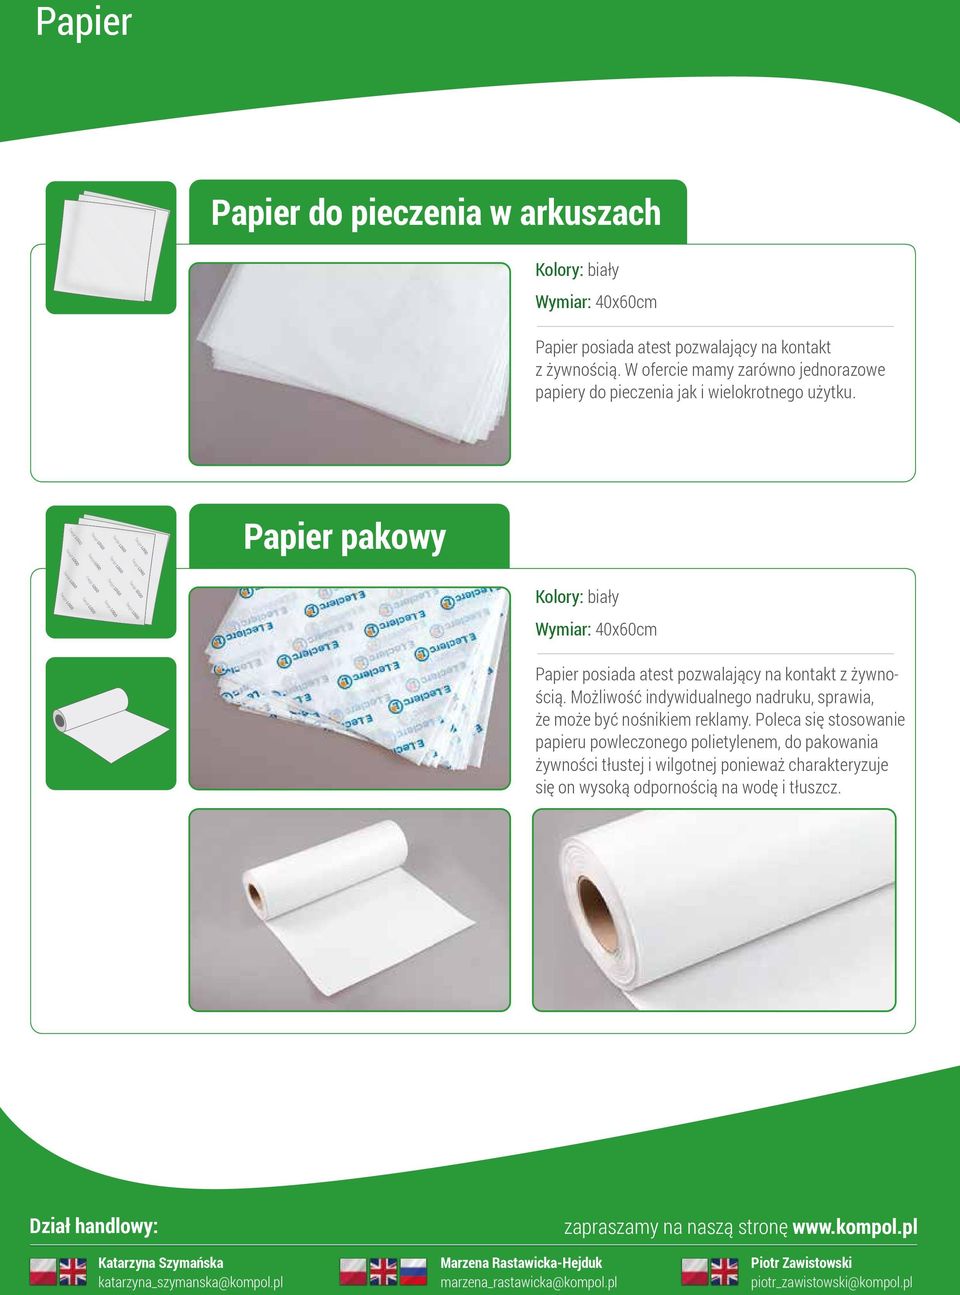 Papier pakowy Kolory: biały Wymiar: 40x60cm Papier posiada atest pozwalający na kontakt z żywnością.